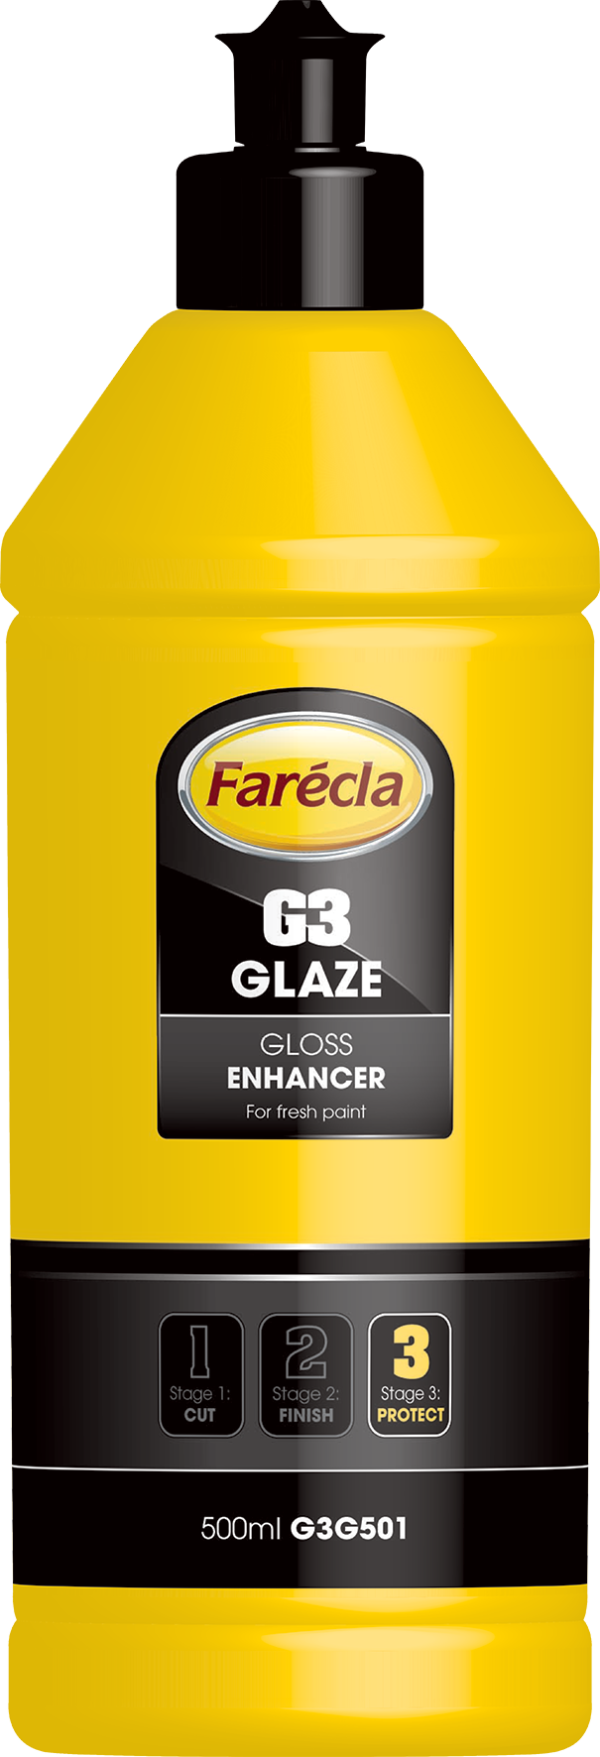 FARECLA G3 GLAZE 500ml